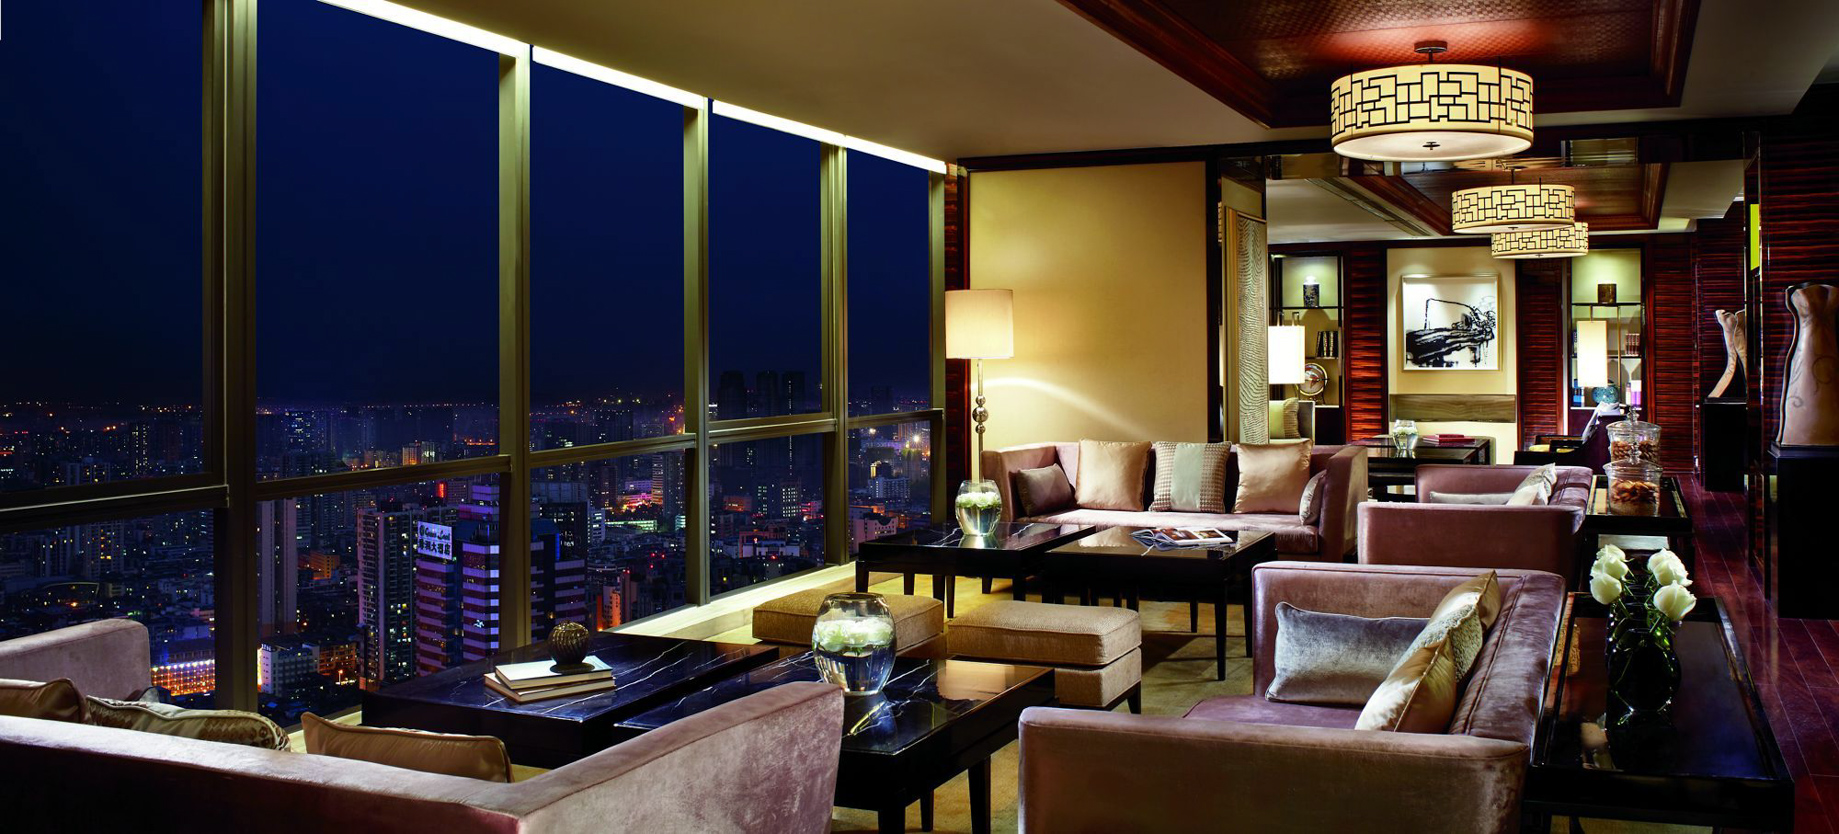 The Ritz-Carlton, Chengdu Hotel – Chengdu, Sichuan, China – Lounge